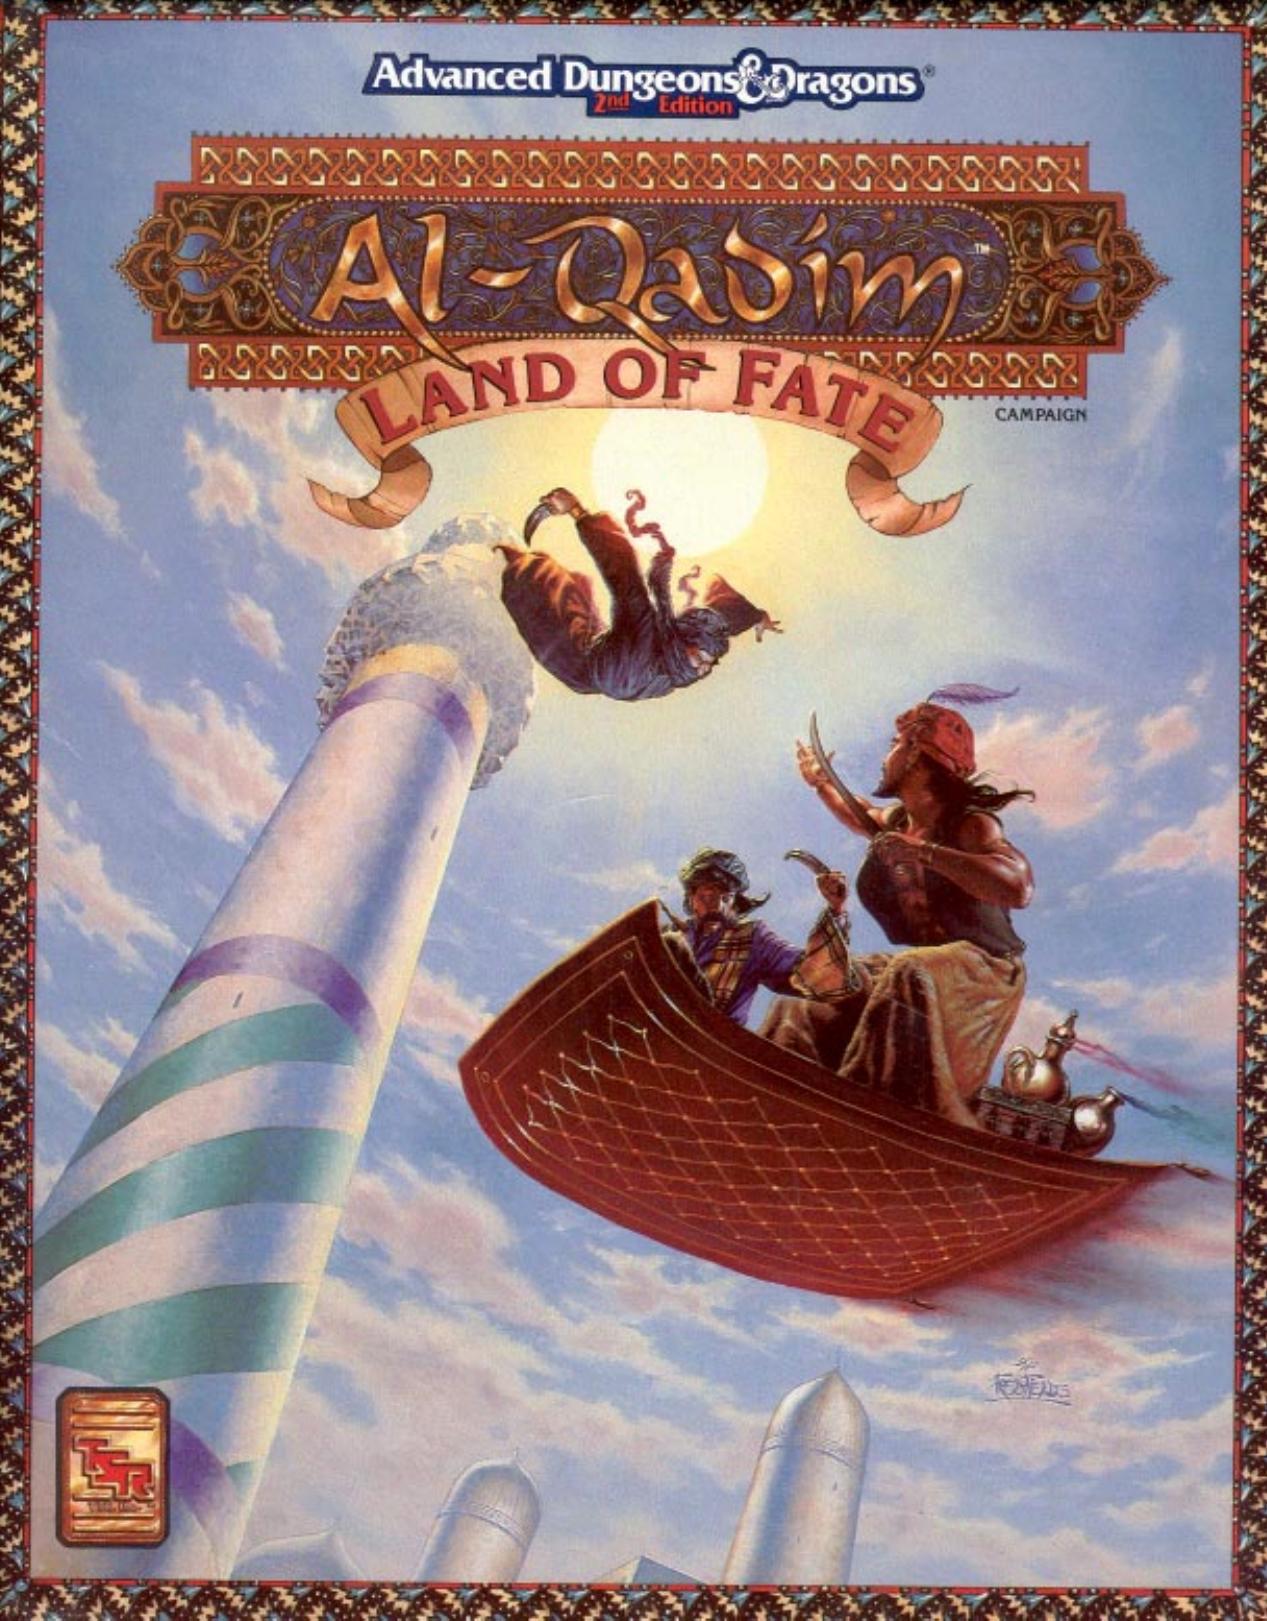 Land of Fate (Al Qadim Campaign Setting)